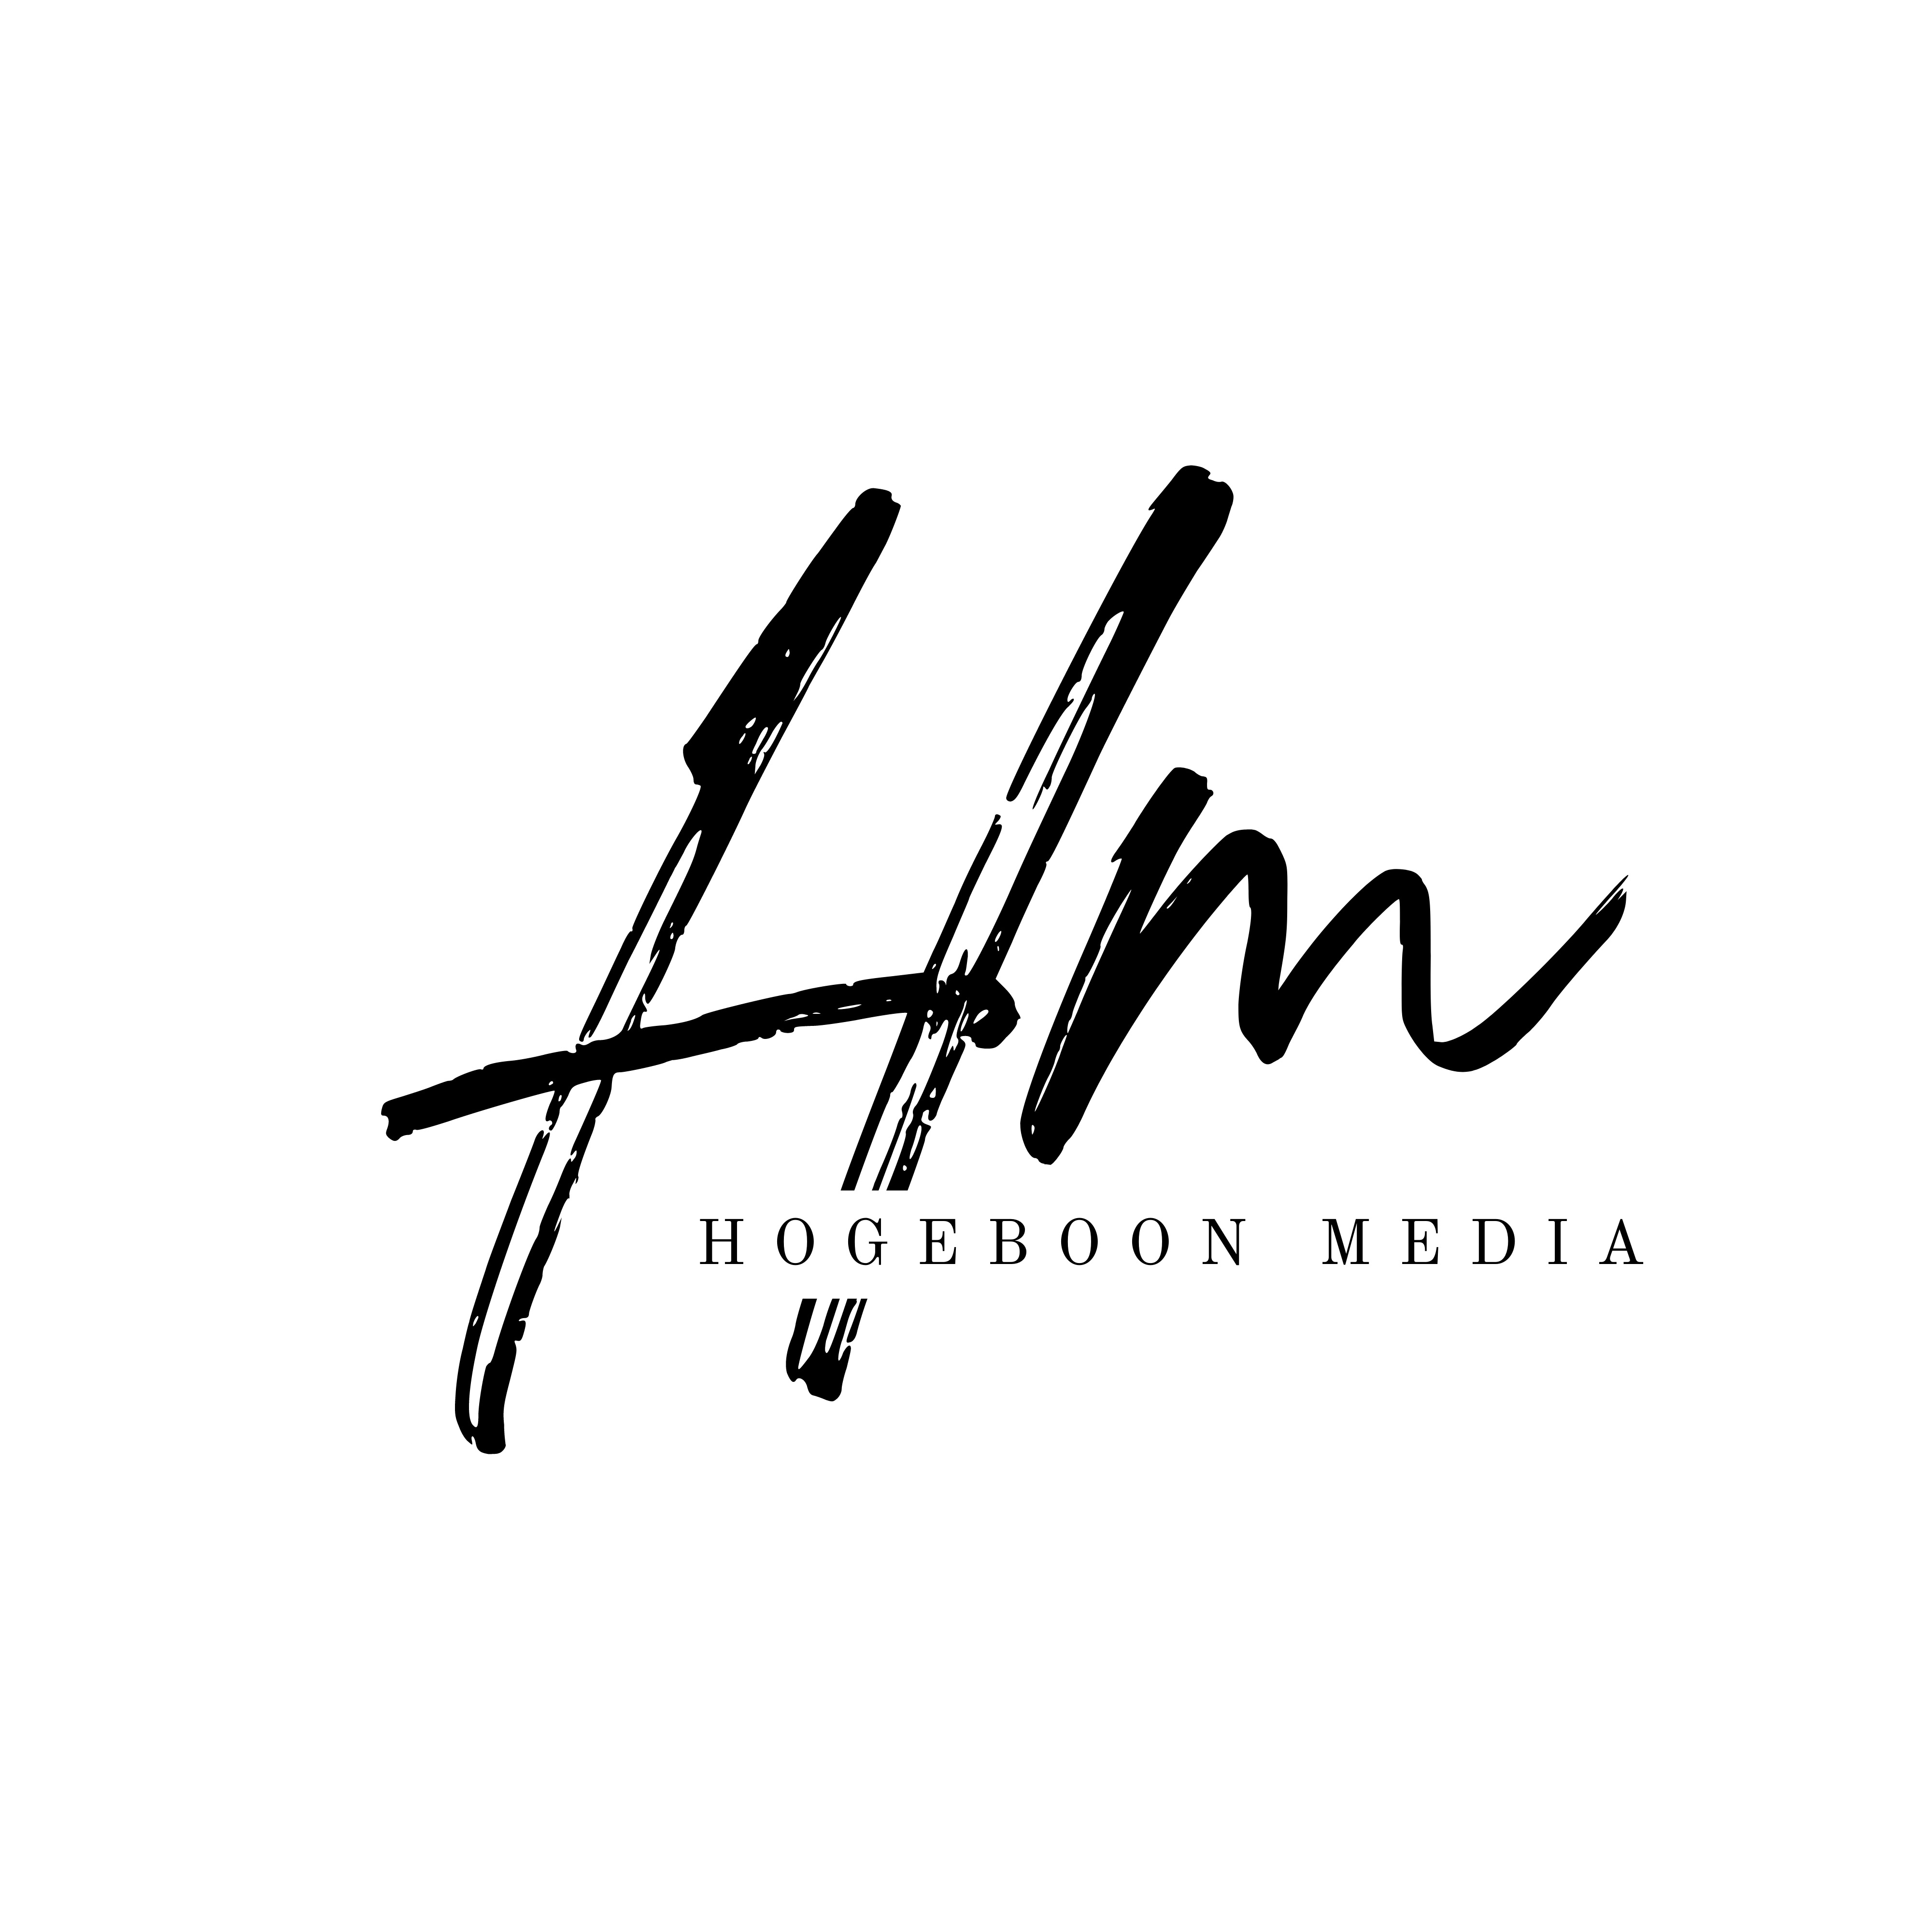 Hogeboon Media